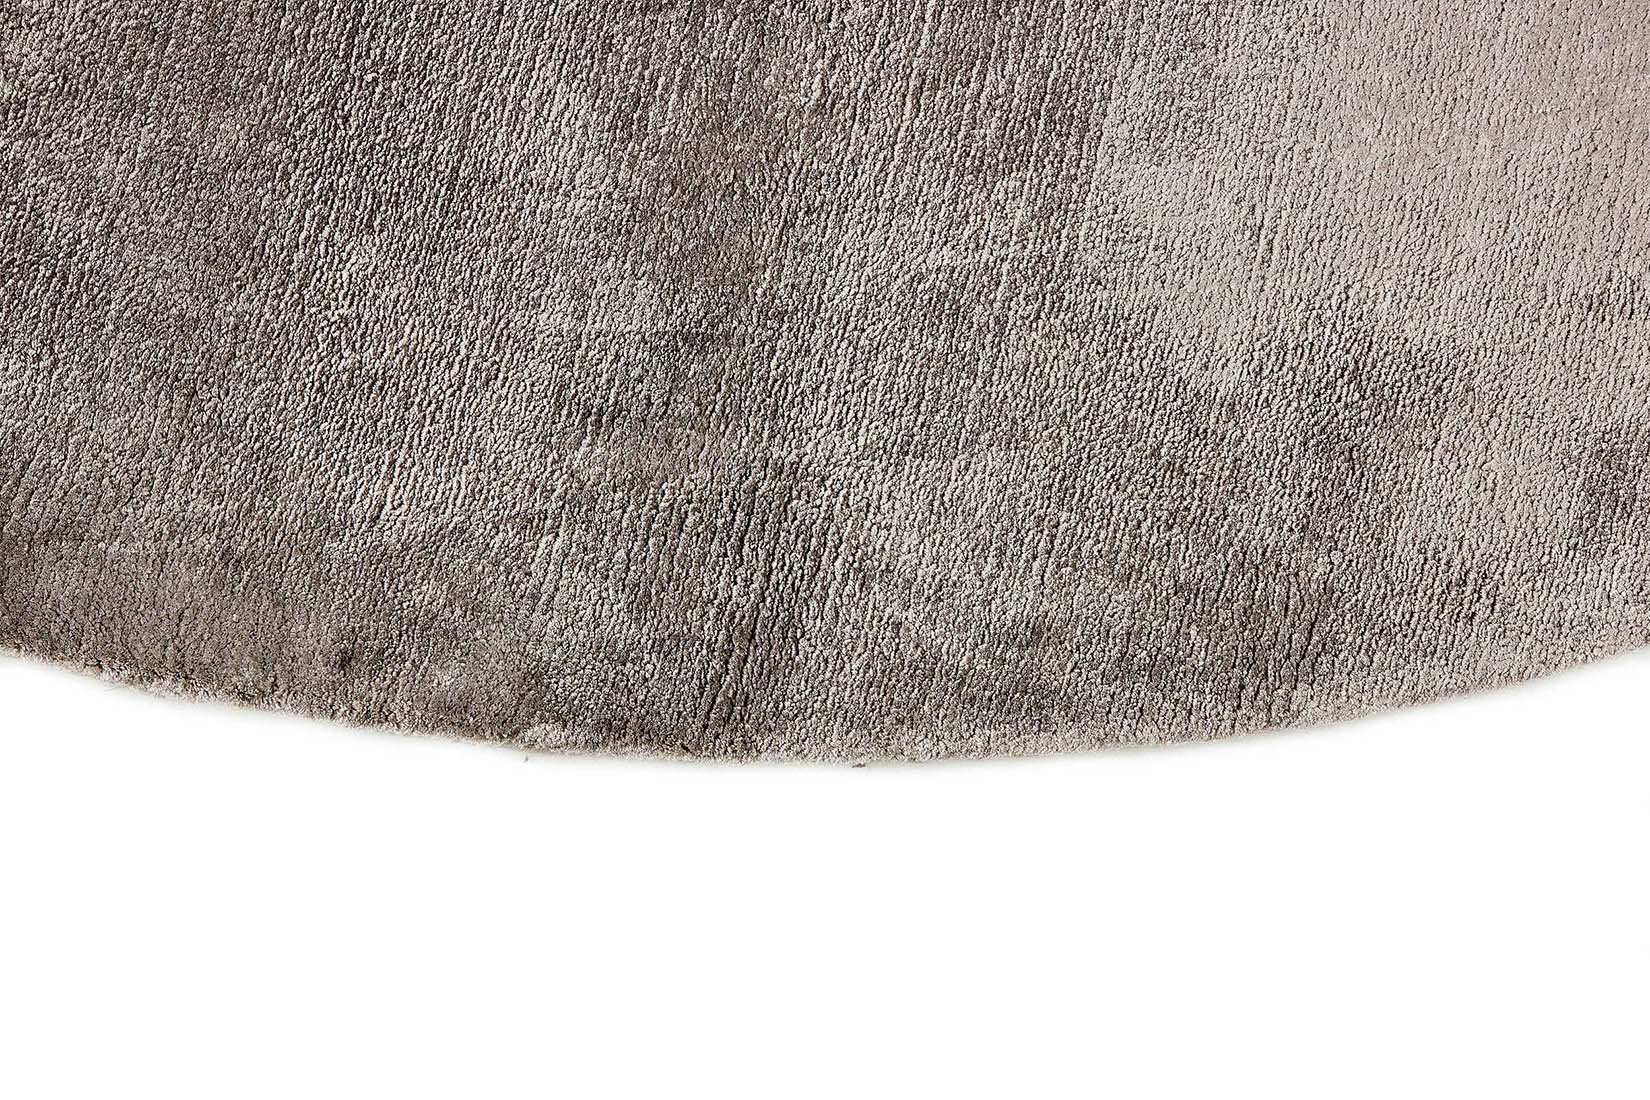 large plain grey and black viscose circle rug
